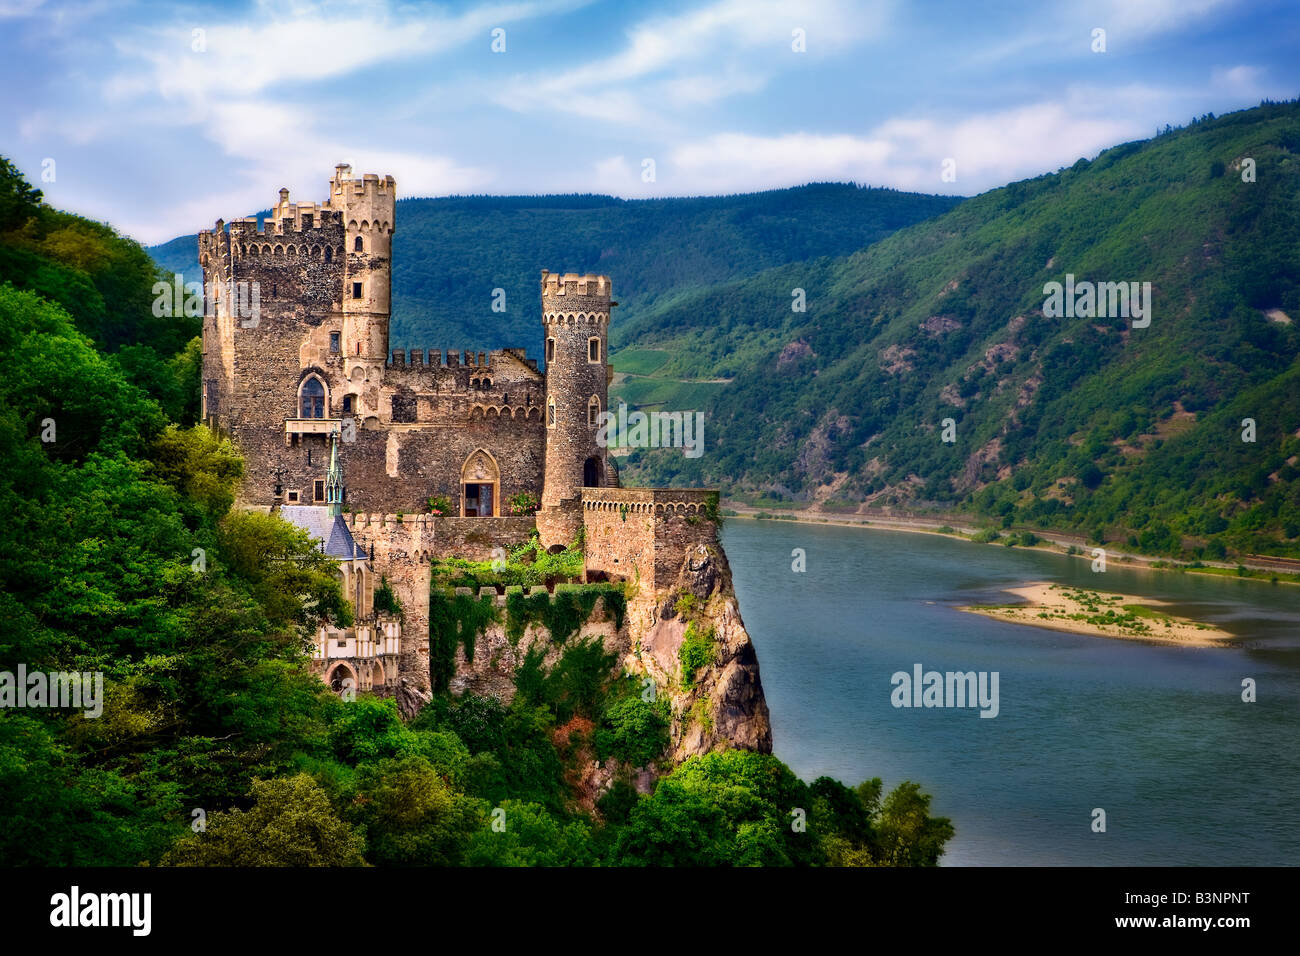 Rheinstein castello medievale, sul fiume Reno in Germania. Foto Stock